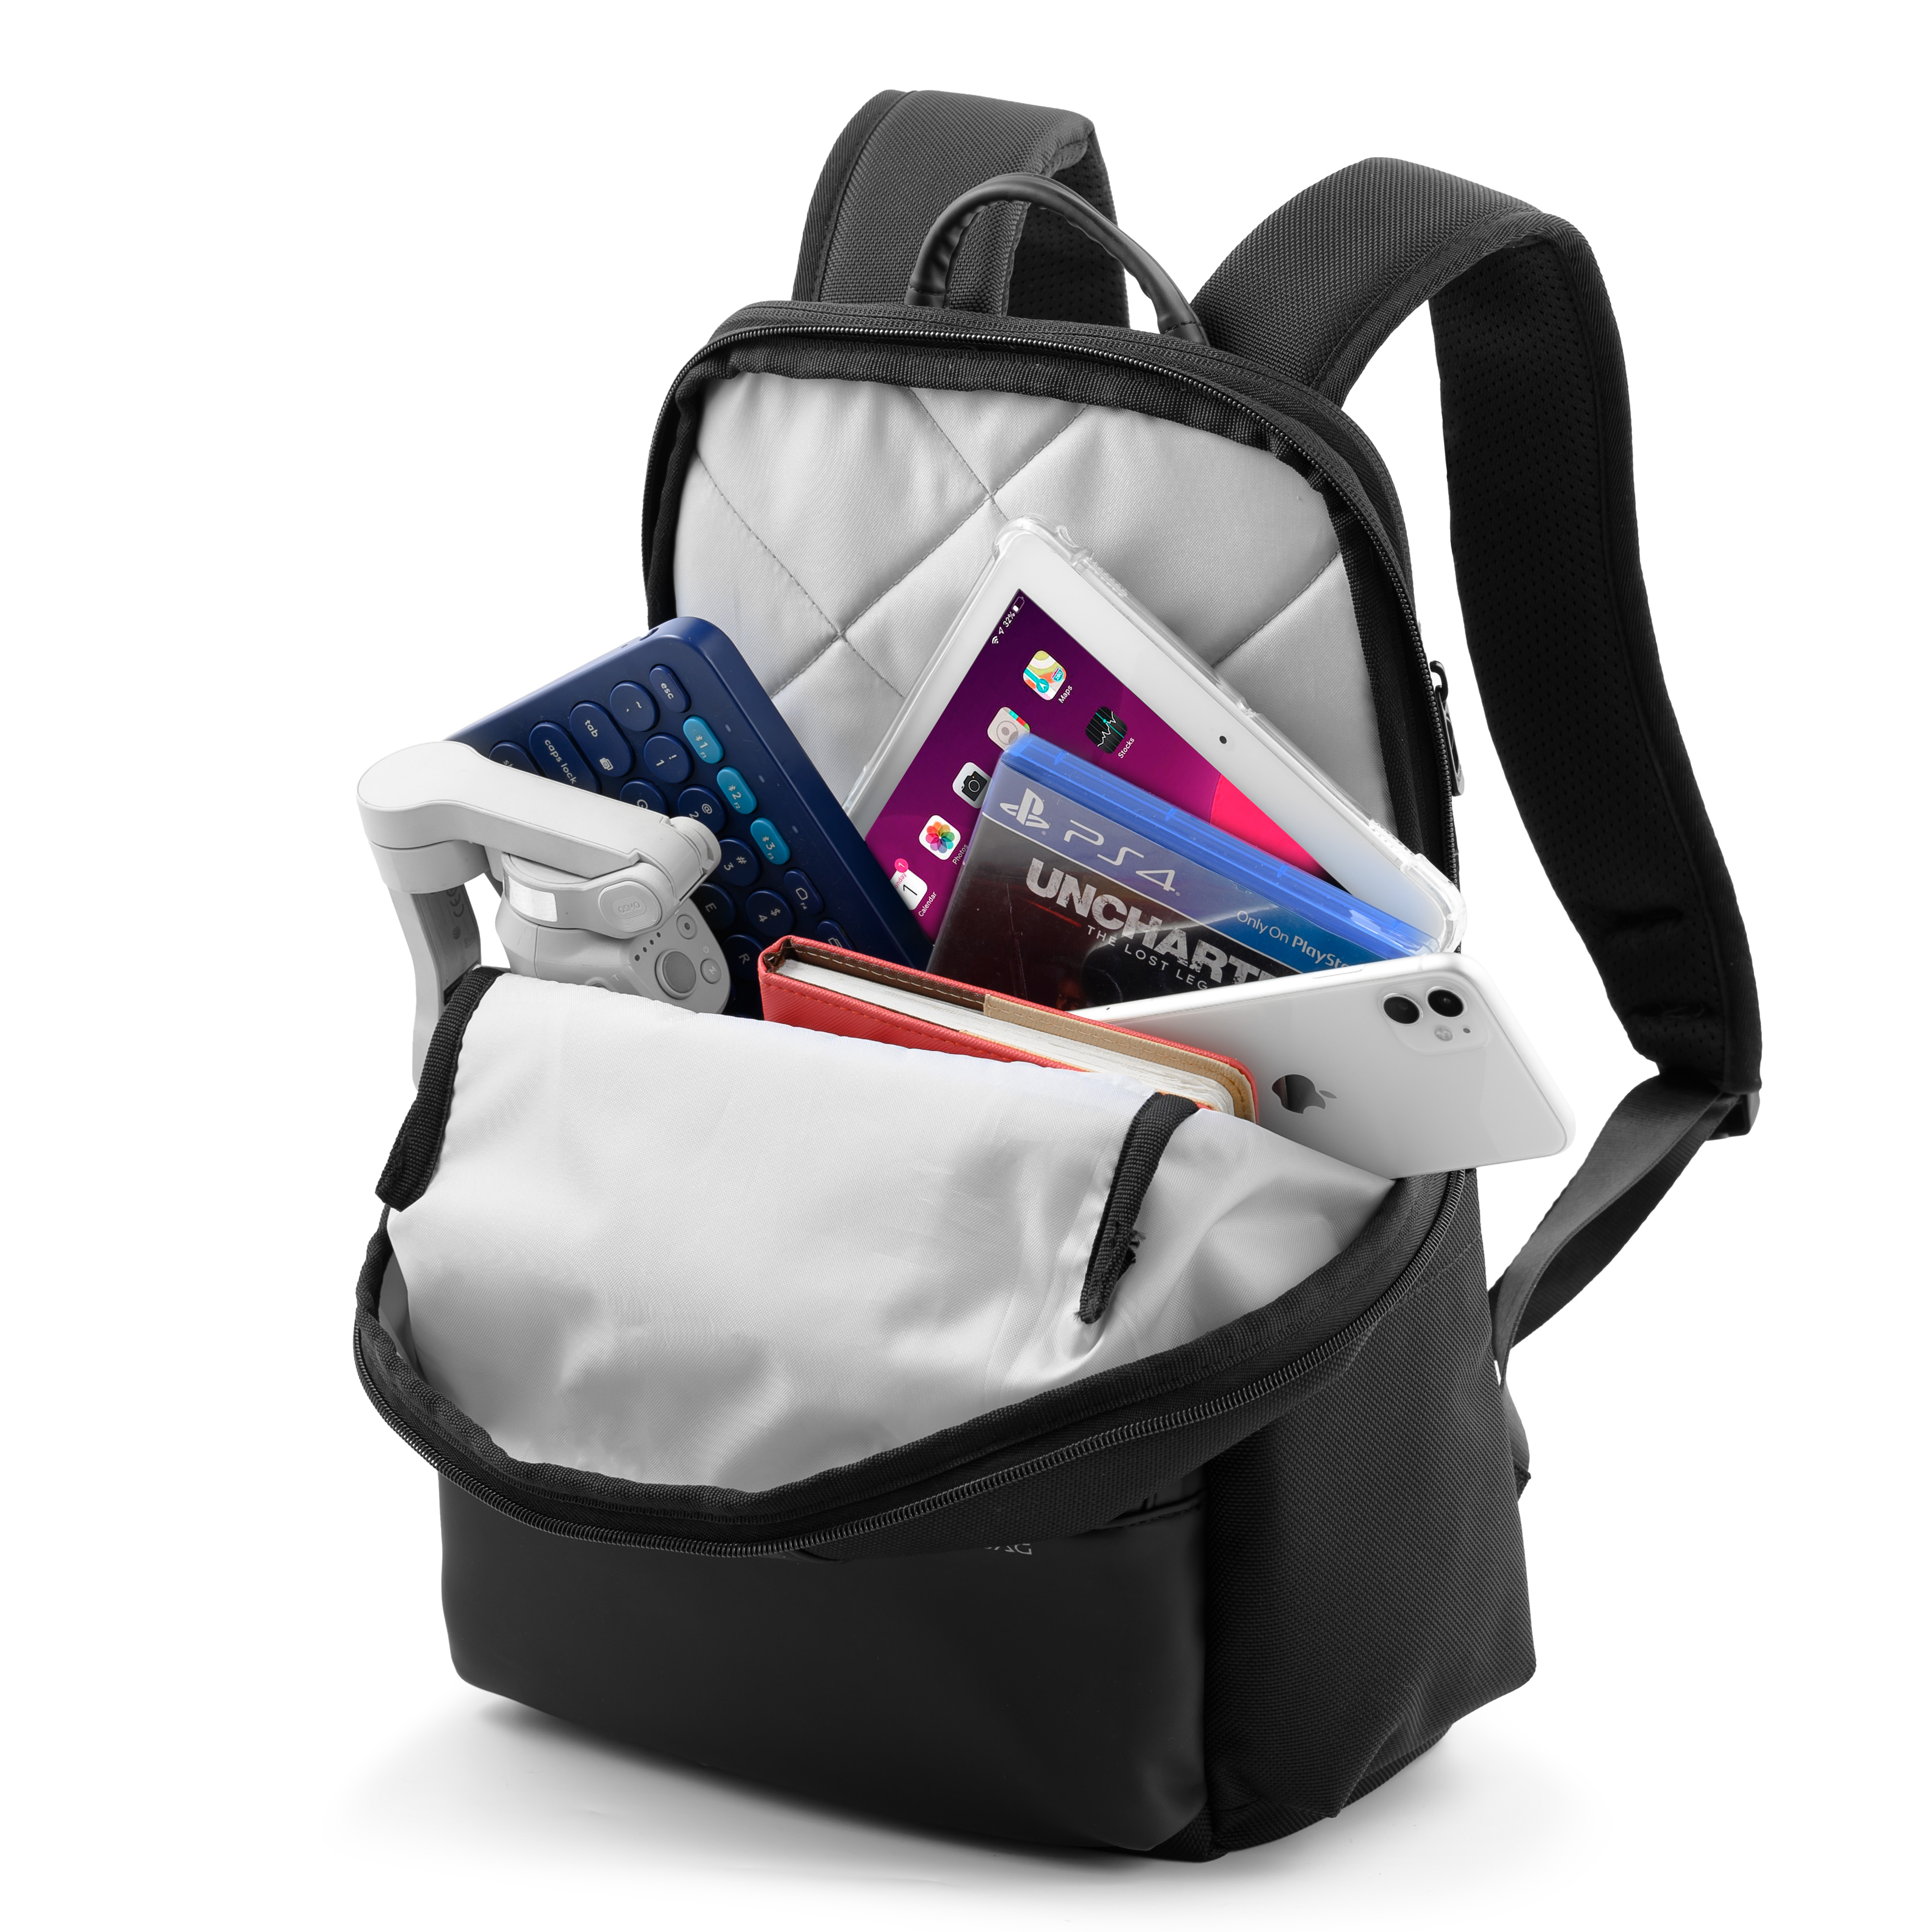 Balo laptop KINGBAG PASSION 14” trẻ trung, gọn nhẹ, tích hợp USB, ngăn tablet, đai vali tiện dụng - Hàng chính hãng